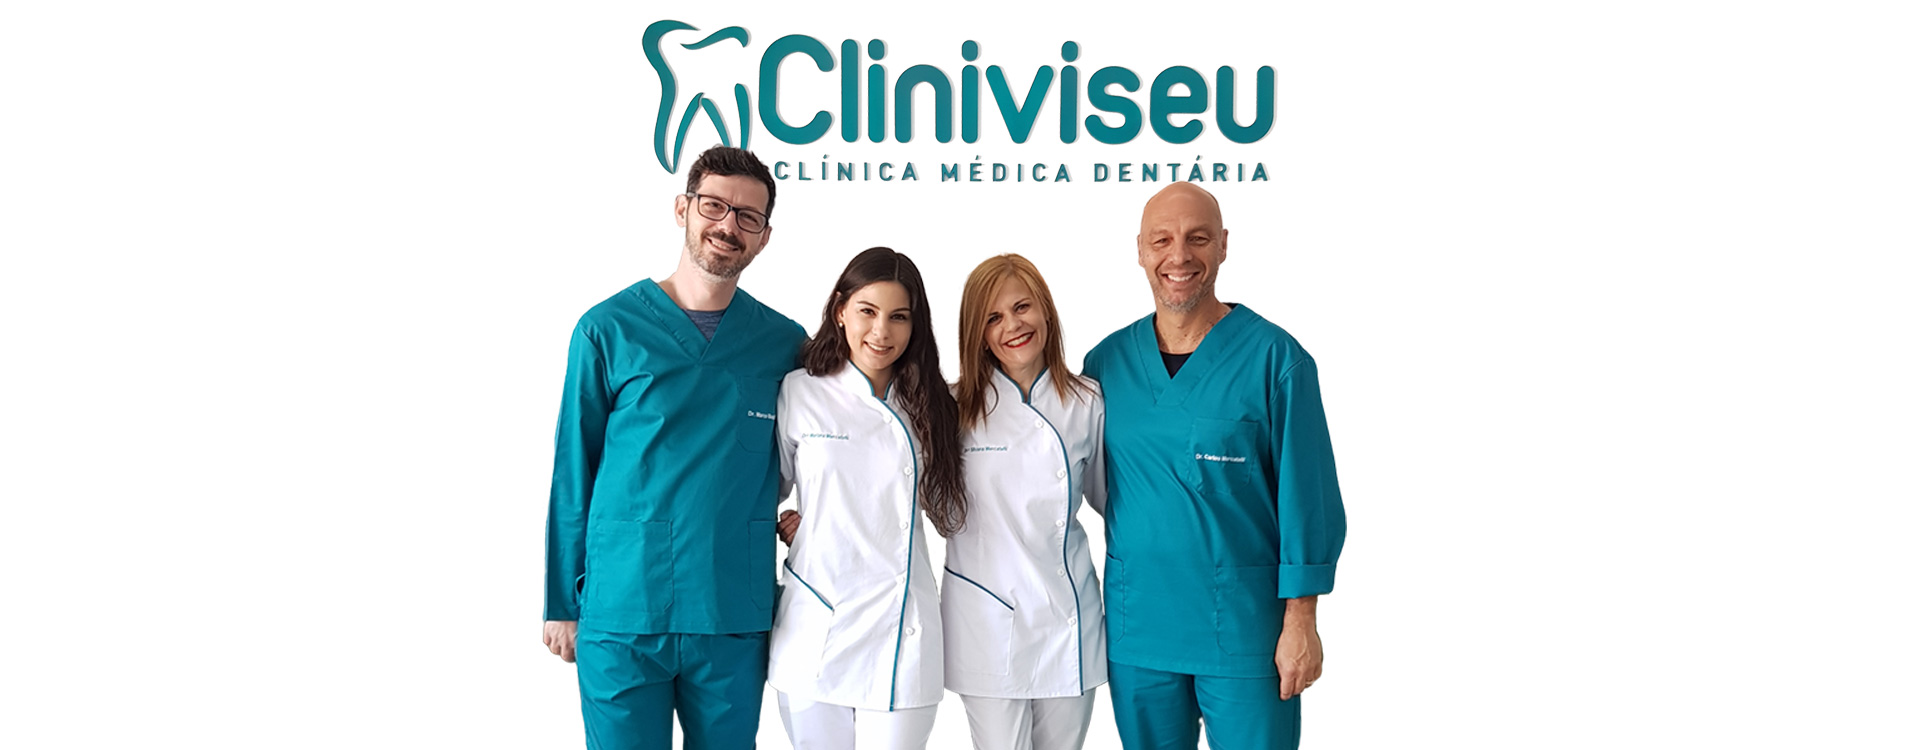 Equipa de médicos da Cliniviseu - Clínica Médica Dentária em Viseu